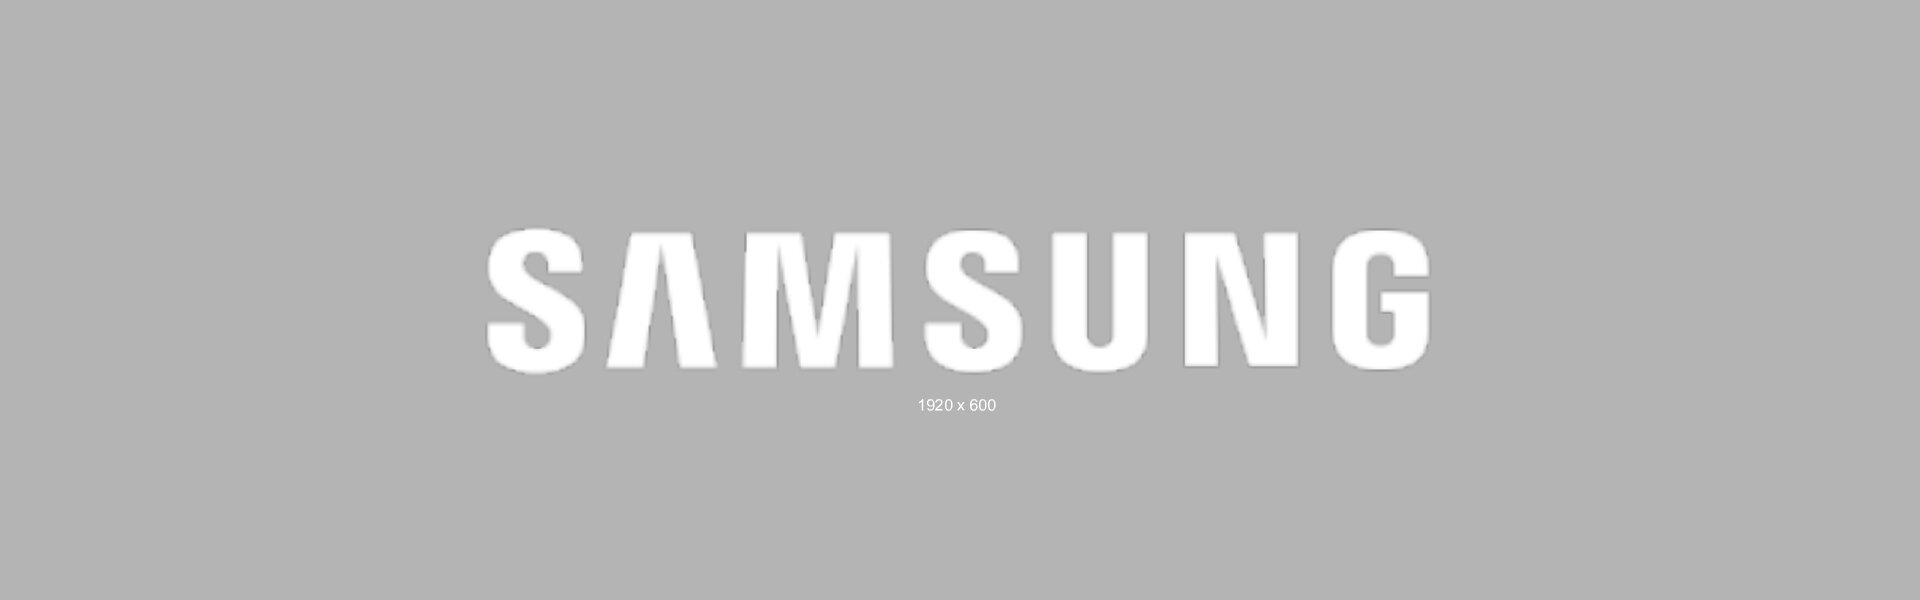 Jeszcze więcej przestrzeni w lodówce Samsung